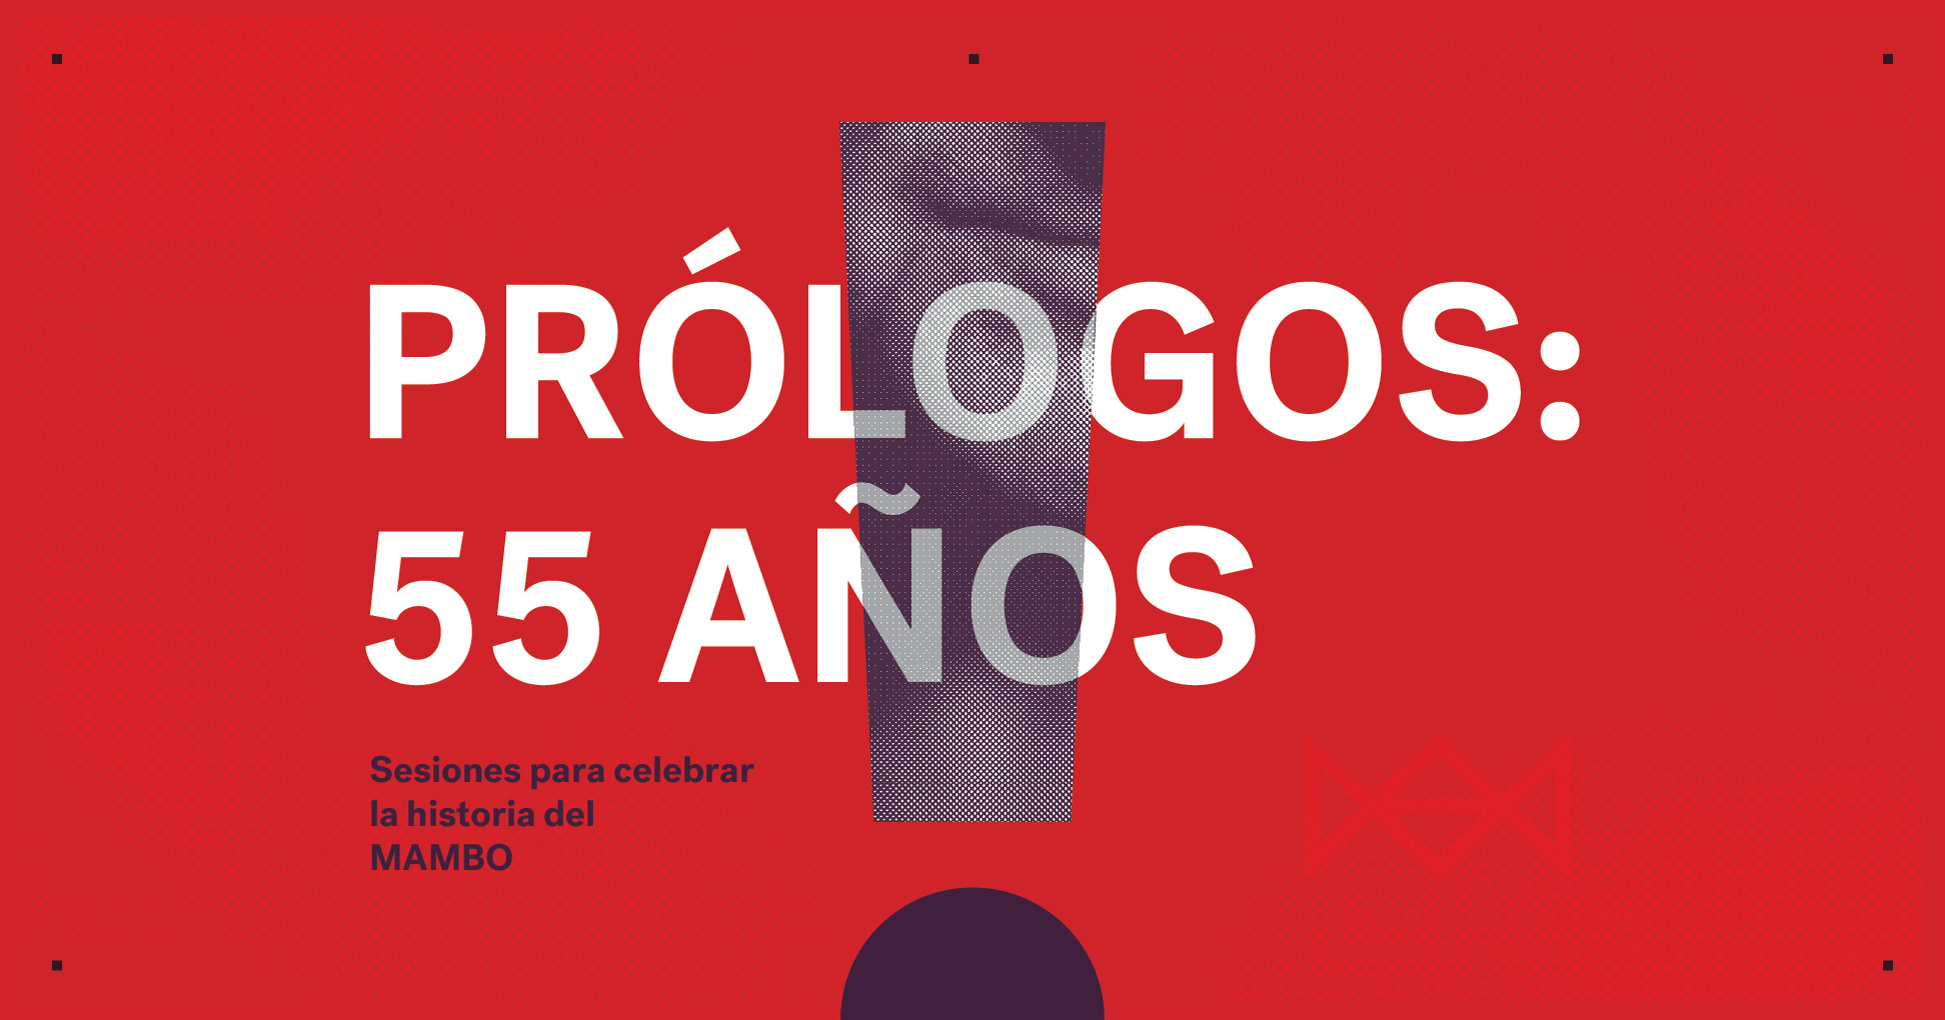 Prólogos : 55 años – Juan Antonio Roda